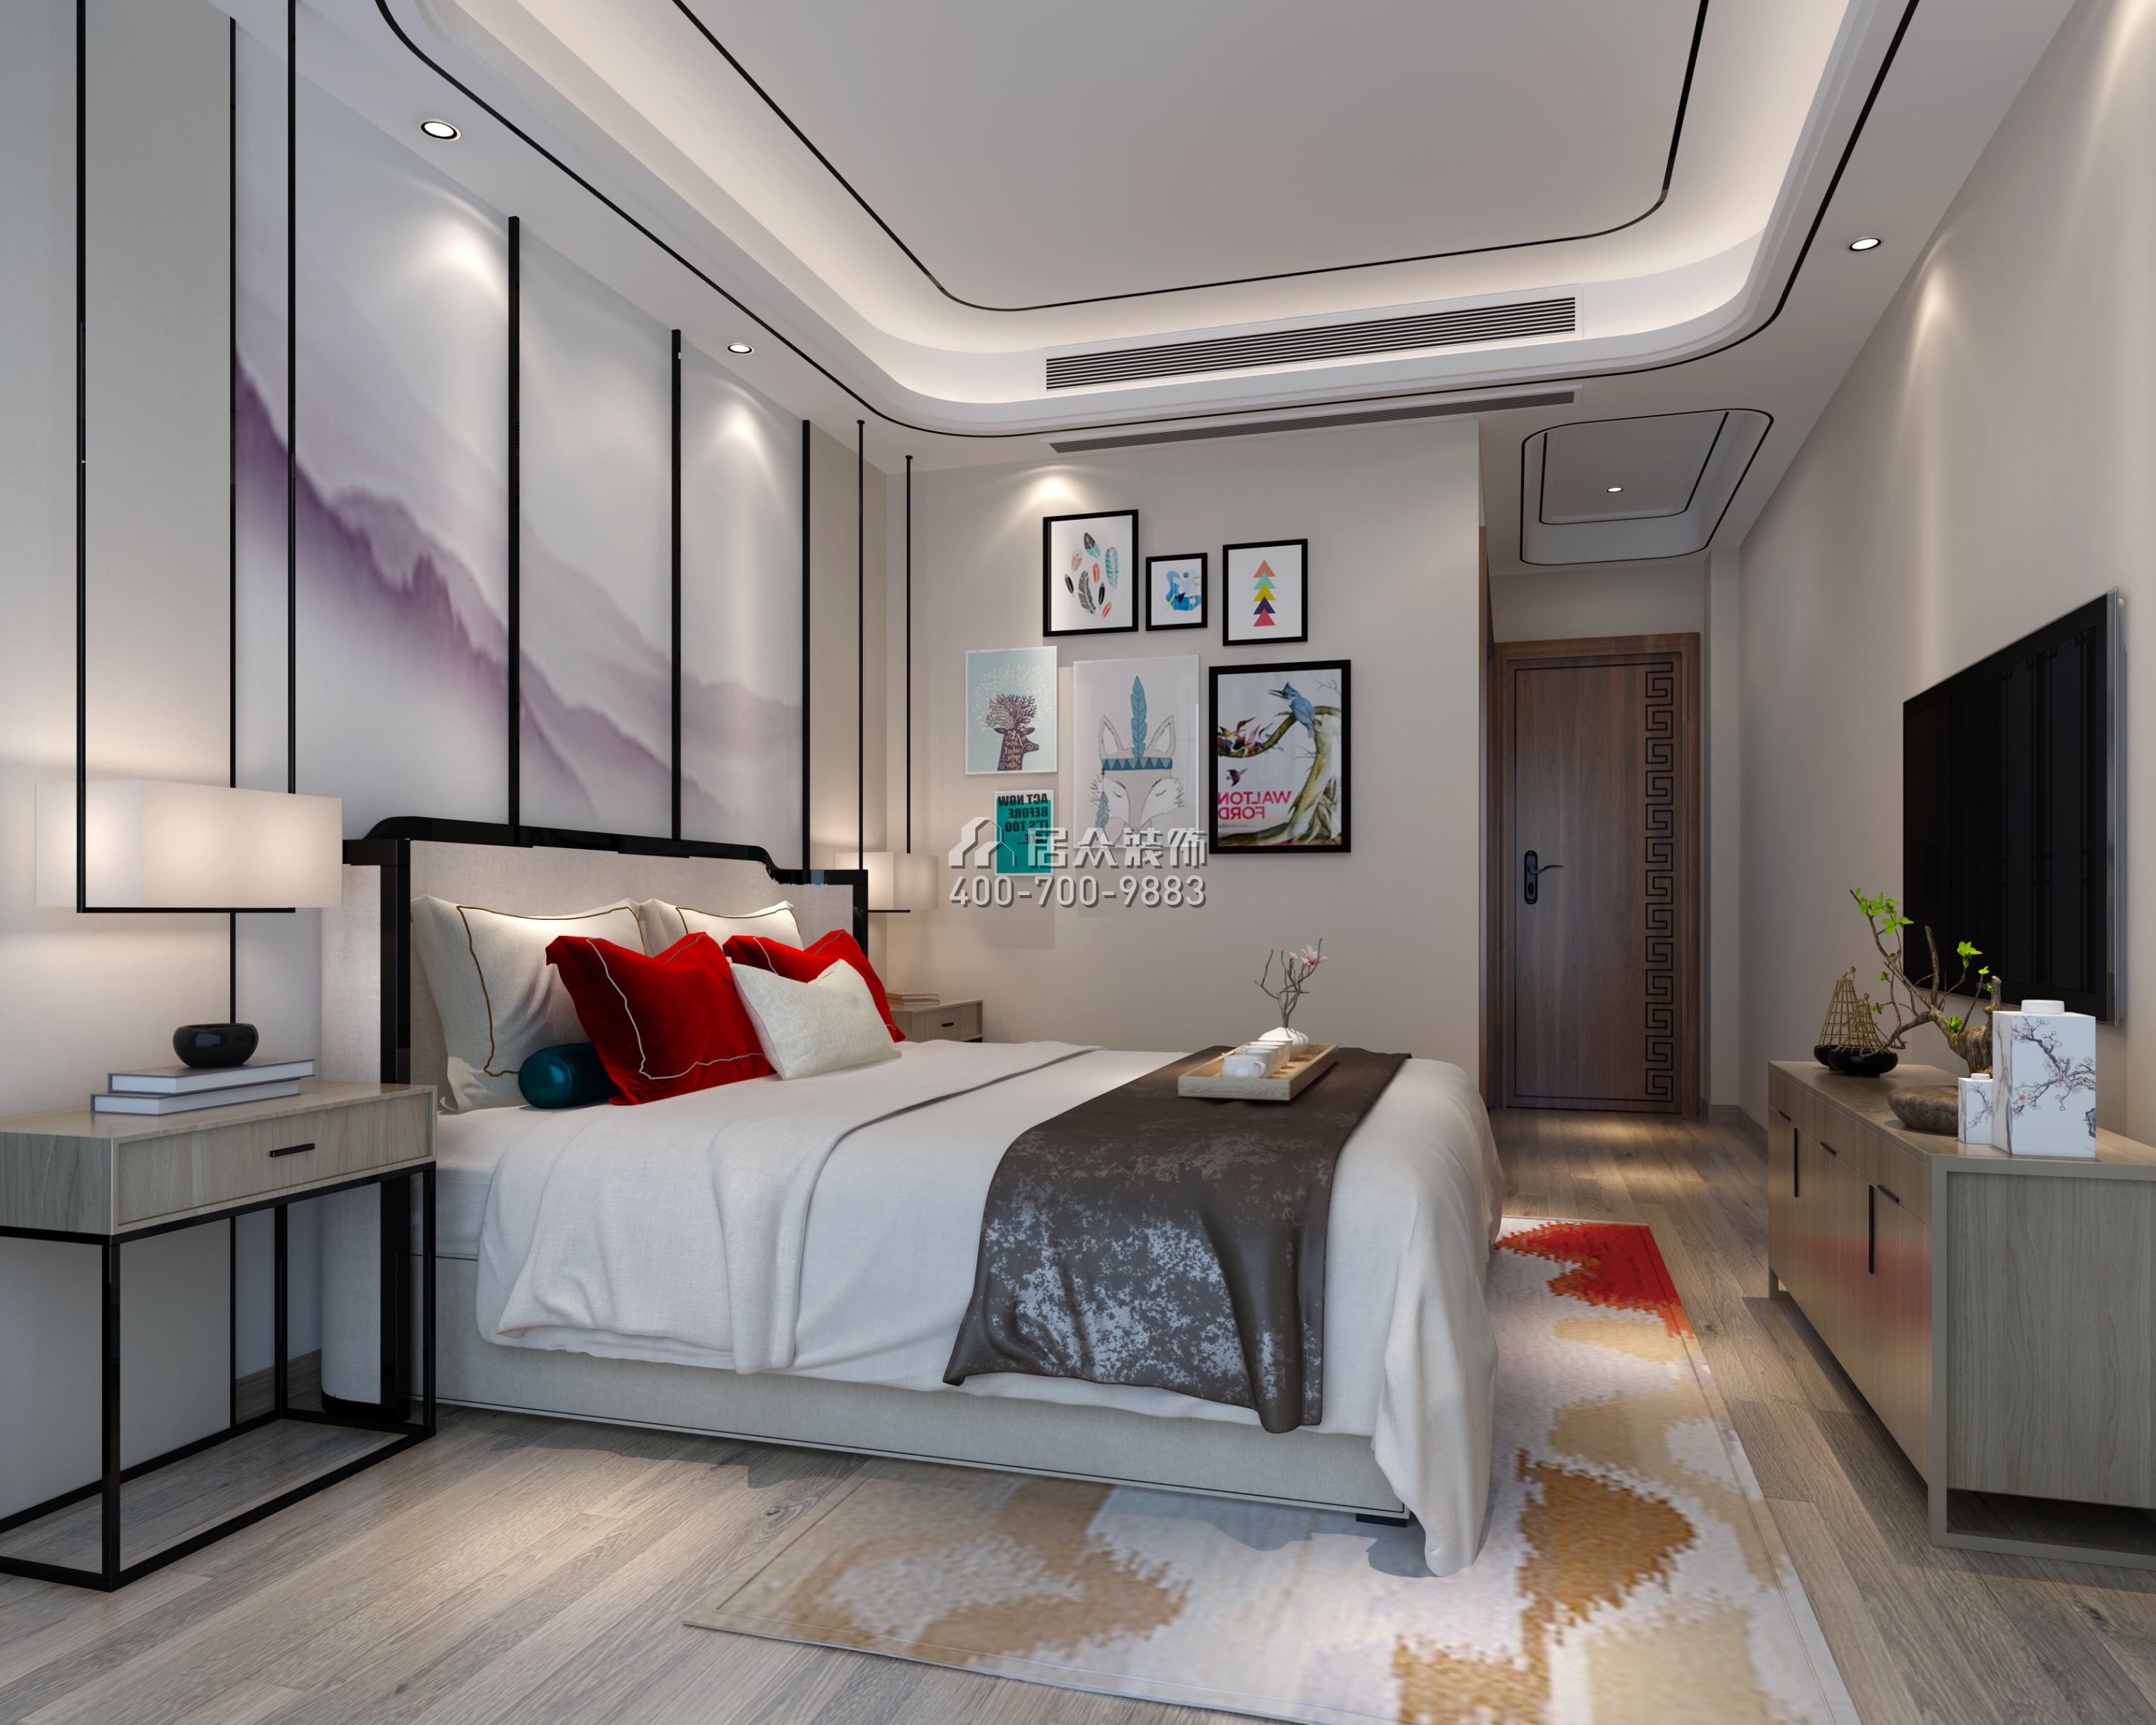 松河瑞园160平方米中式风格平层户型卧室装修效果图